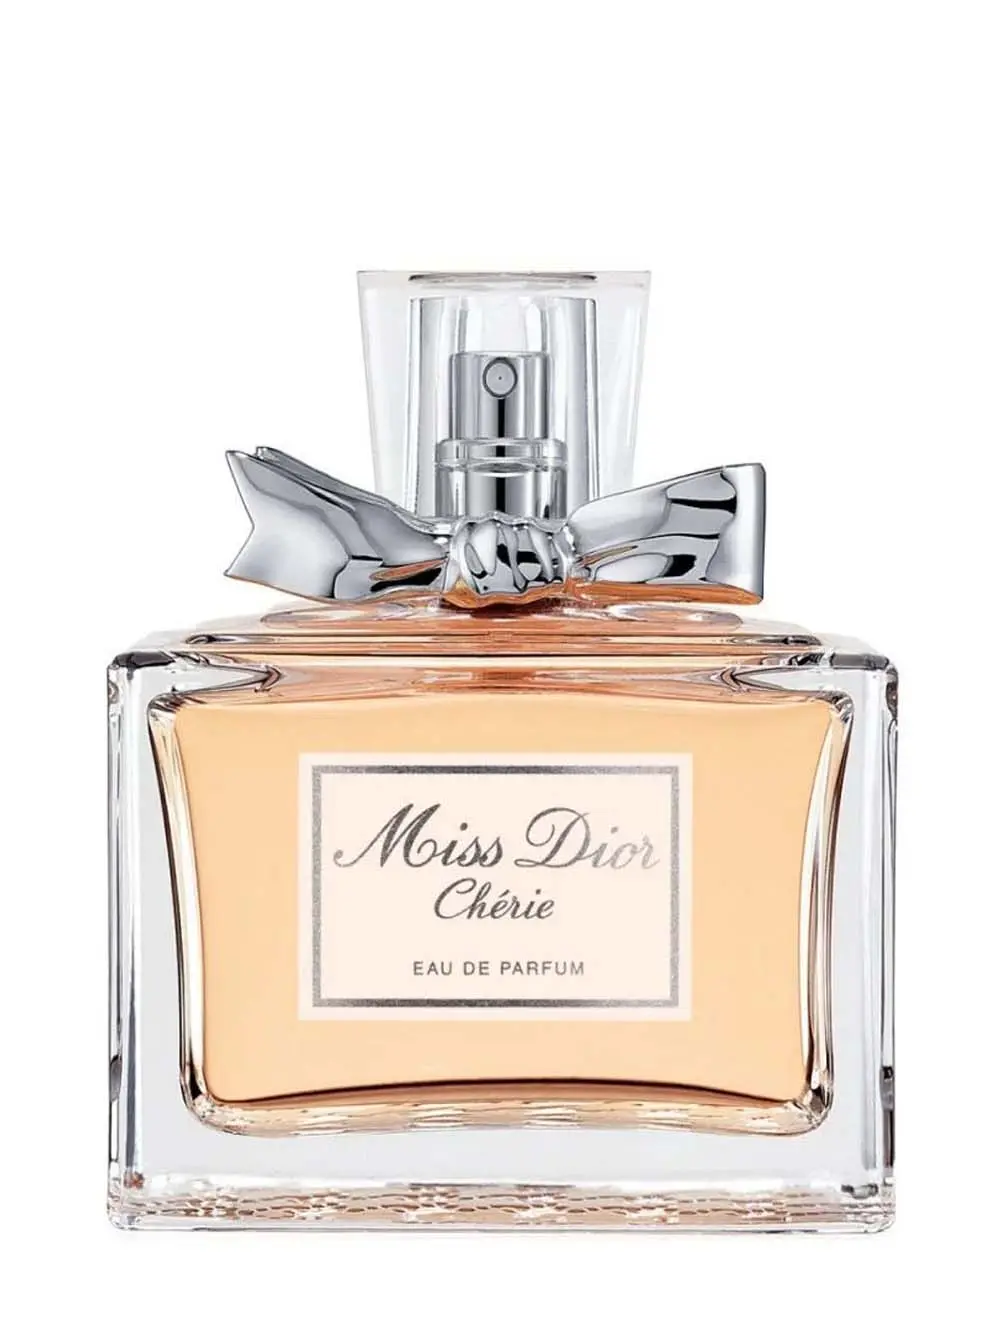 Dior Miss Dior Cherie 100ml Eau De Parfum – Merci.am Perfume